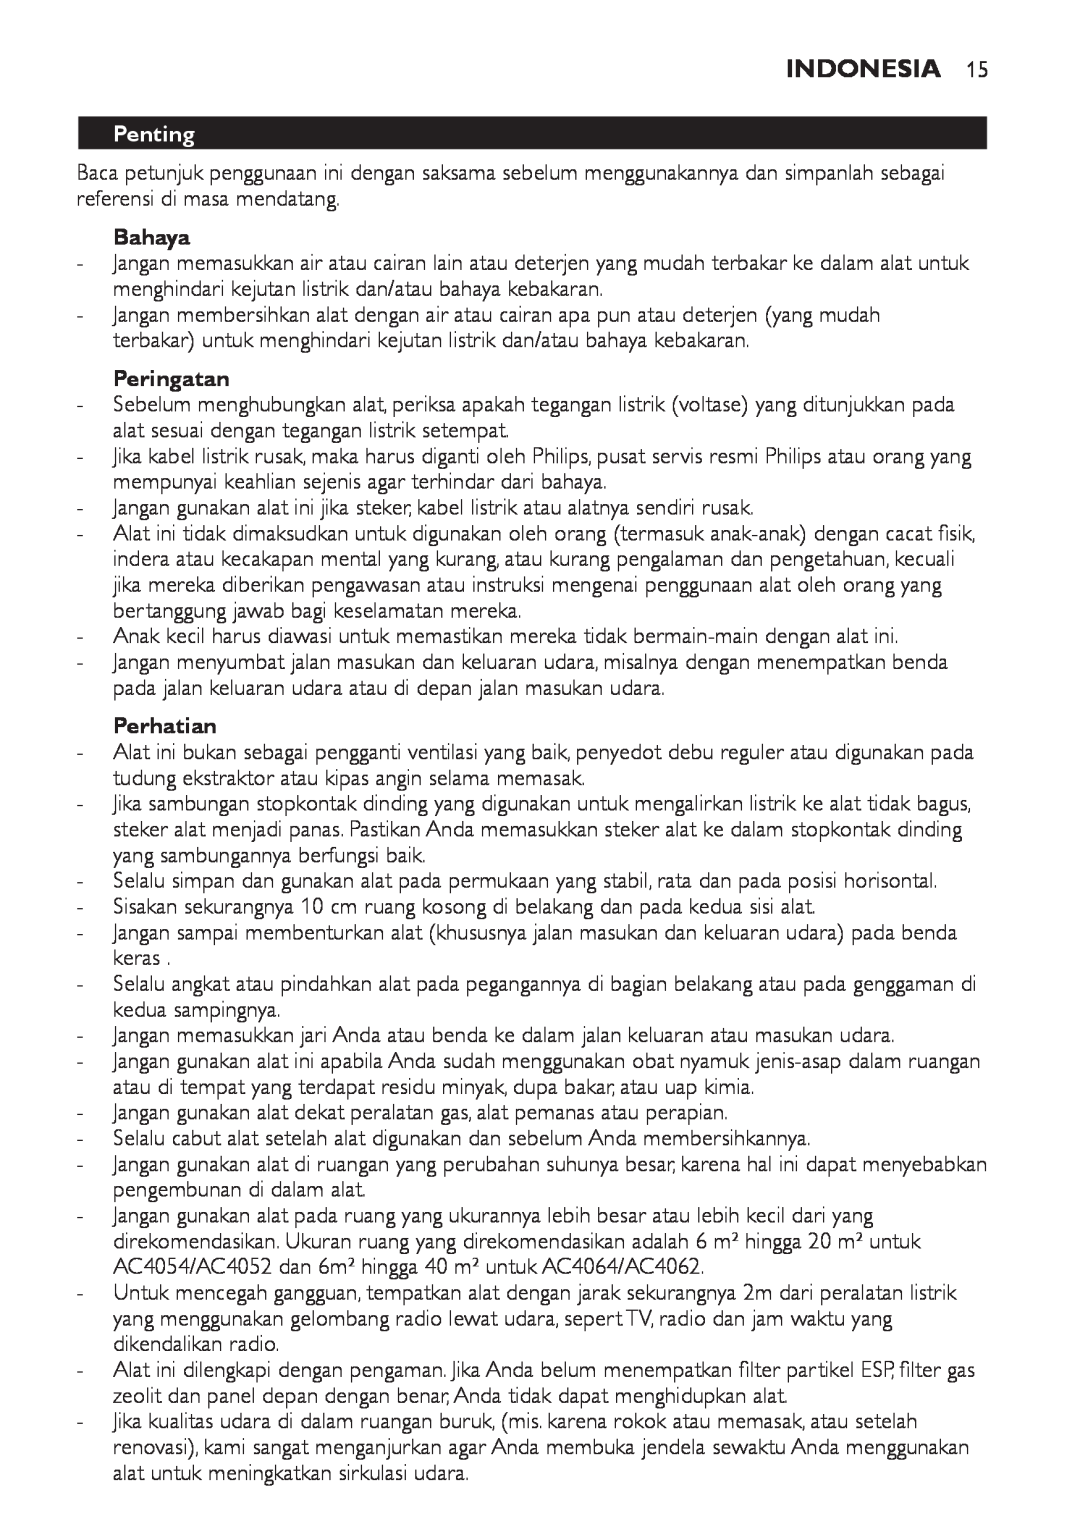 Philips AC4108, AC4118 manual Indonesia, Penting, Bahaya, Peringatan, Perhatian 